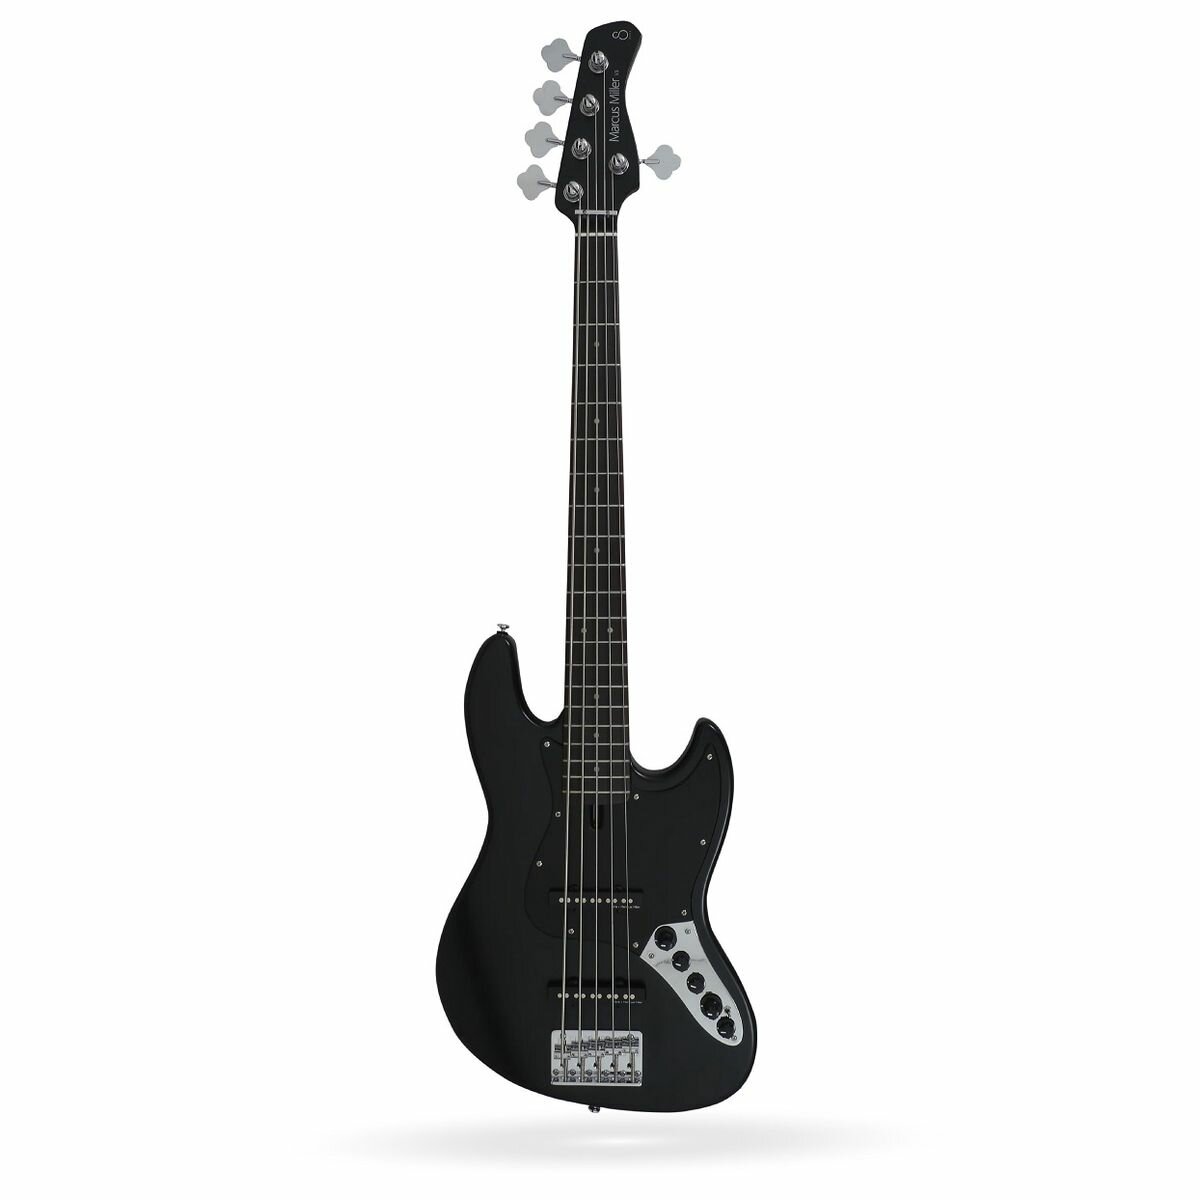 Sire V3-5 BKS 5-струнная бас-гитара, форма Jazz Bass, активная электроника, цвет черный матовый